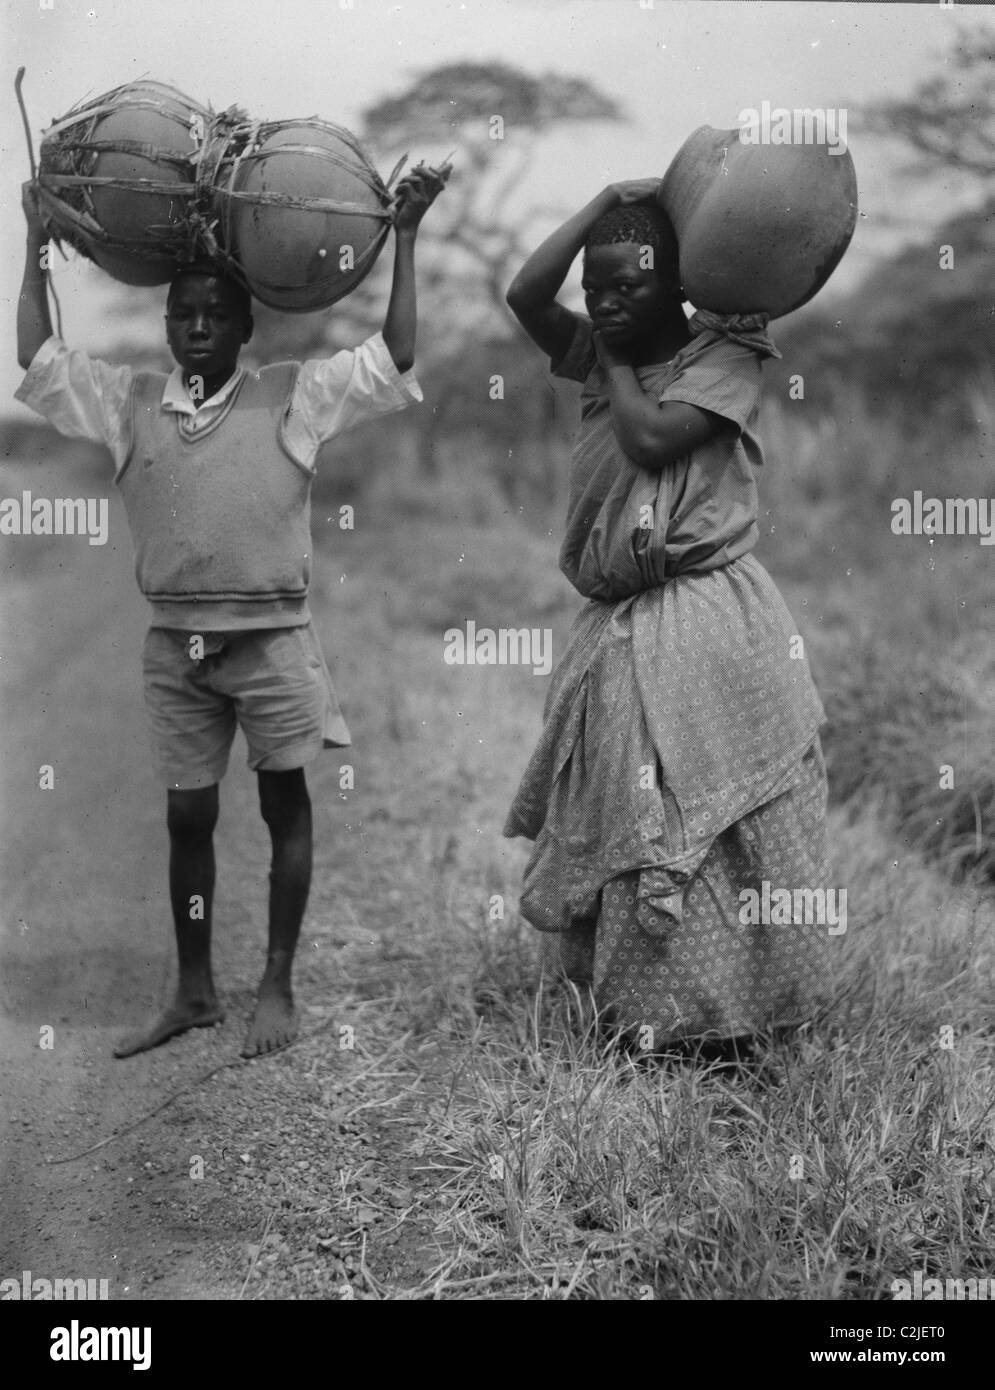 Uganda boy and girl carrying jars Stock Photo - Alamy